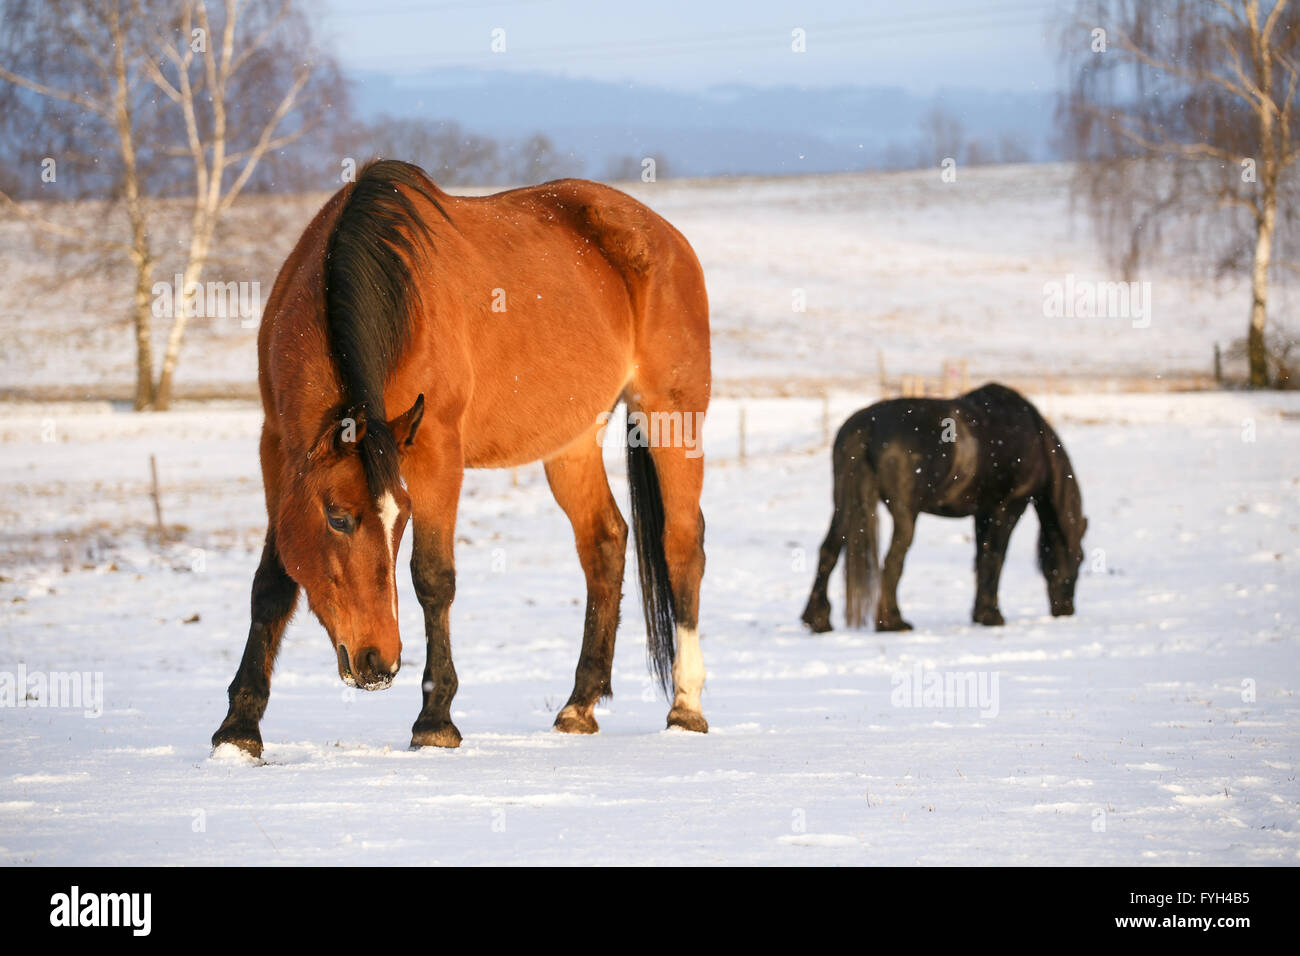 Rurale scena con due cavalli nella neve in una fredda giornata invernale. Foto Stock